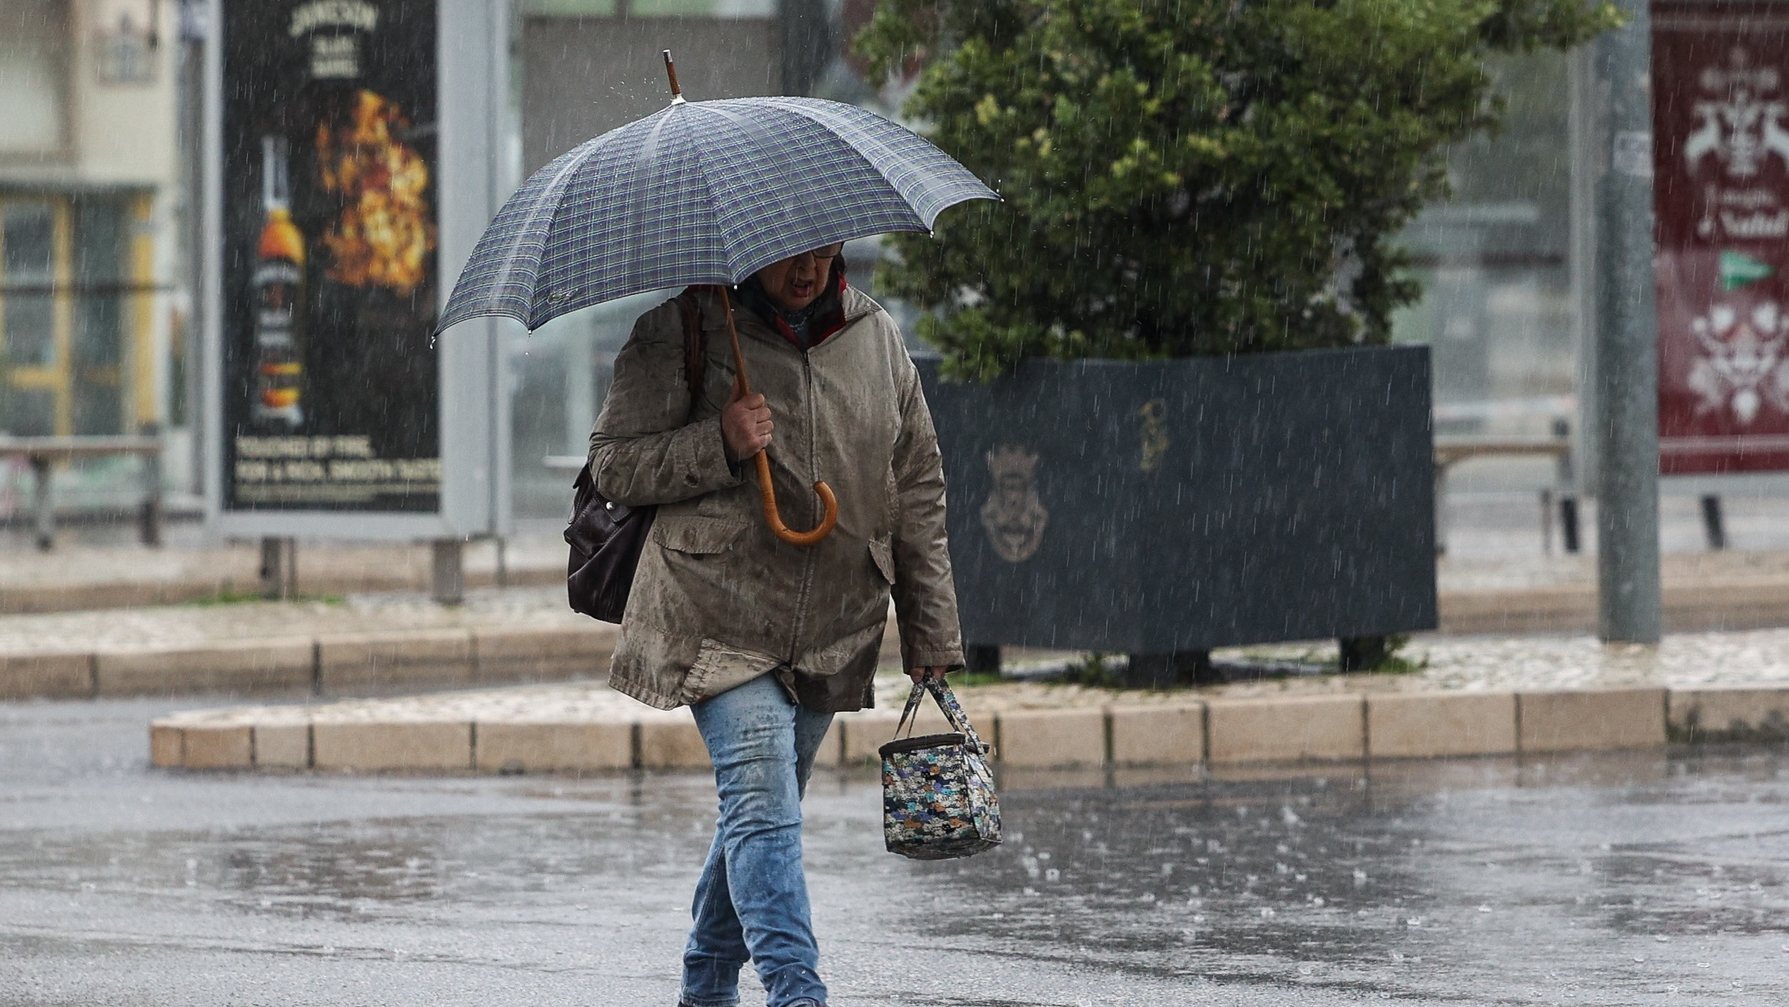 Traseunte passa com chapéu de chuva na zona de Algés em Oeiras num dia de temporal, 14 de dezembro de 2022. TIAGO PETINGA/LUSA